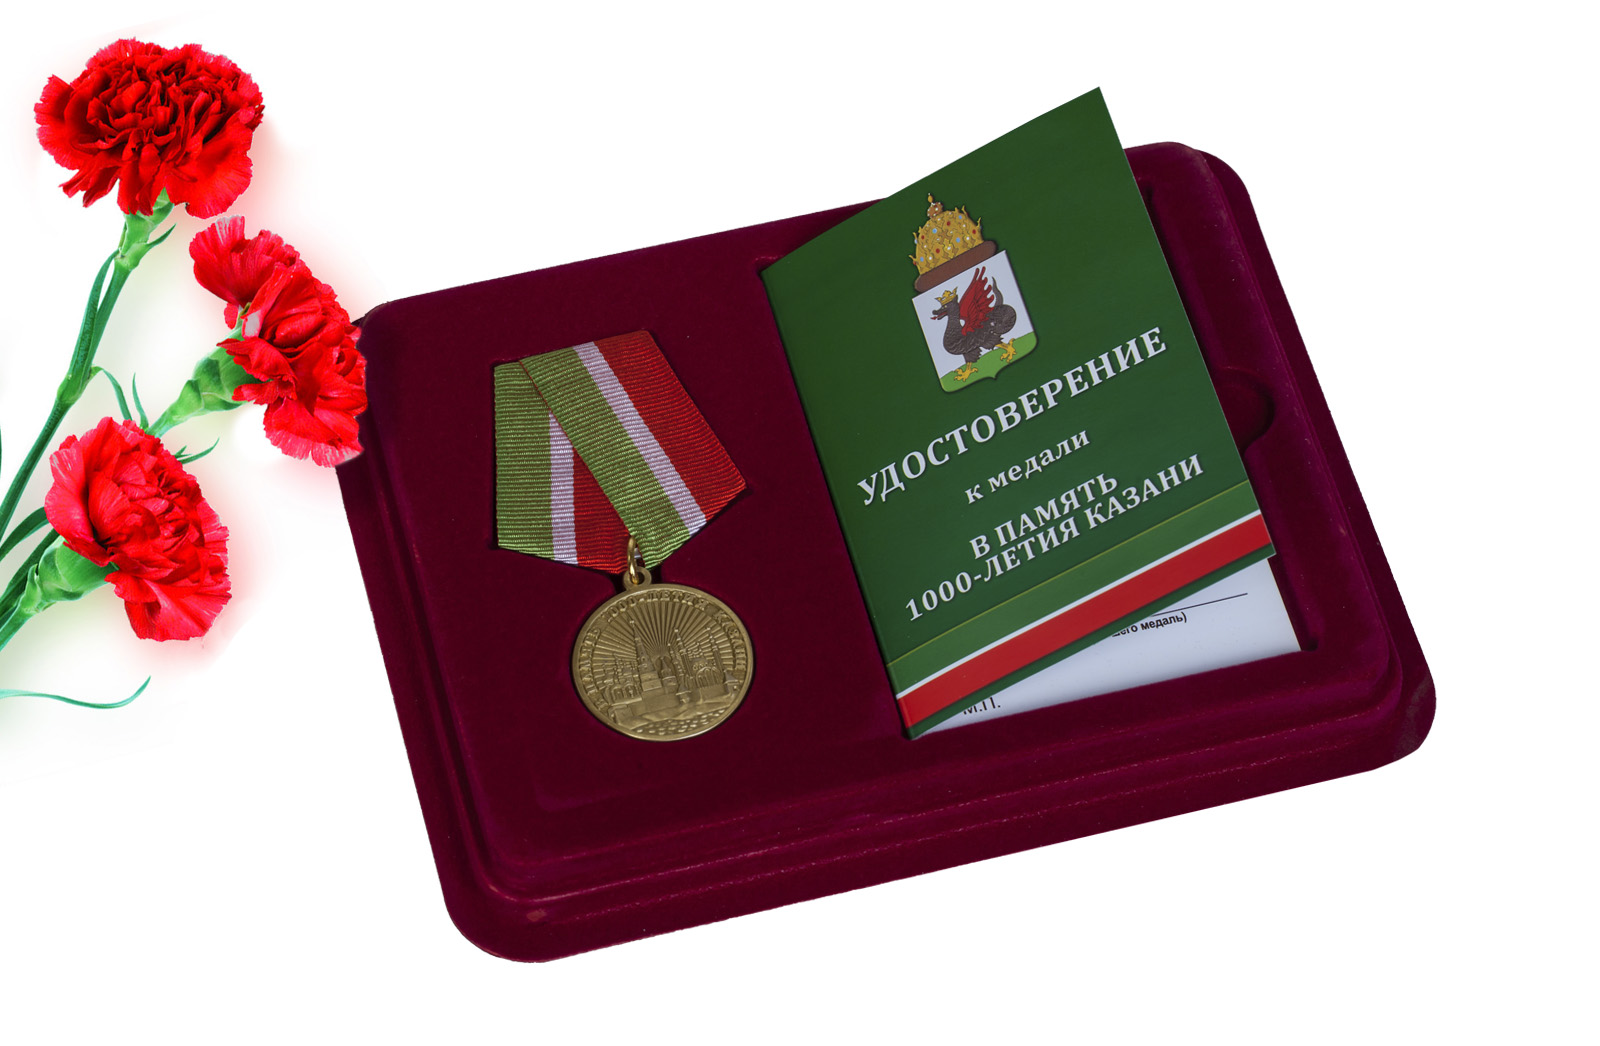 Купить юбилейную медаль В память 1000-летия Казани в подарок мужчине